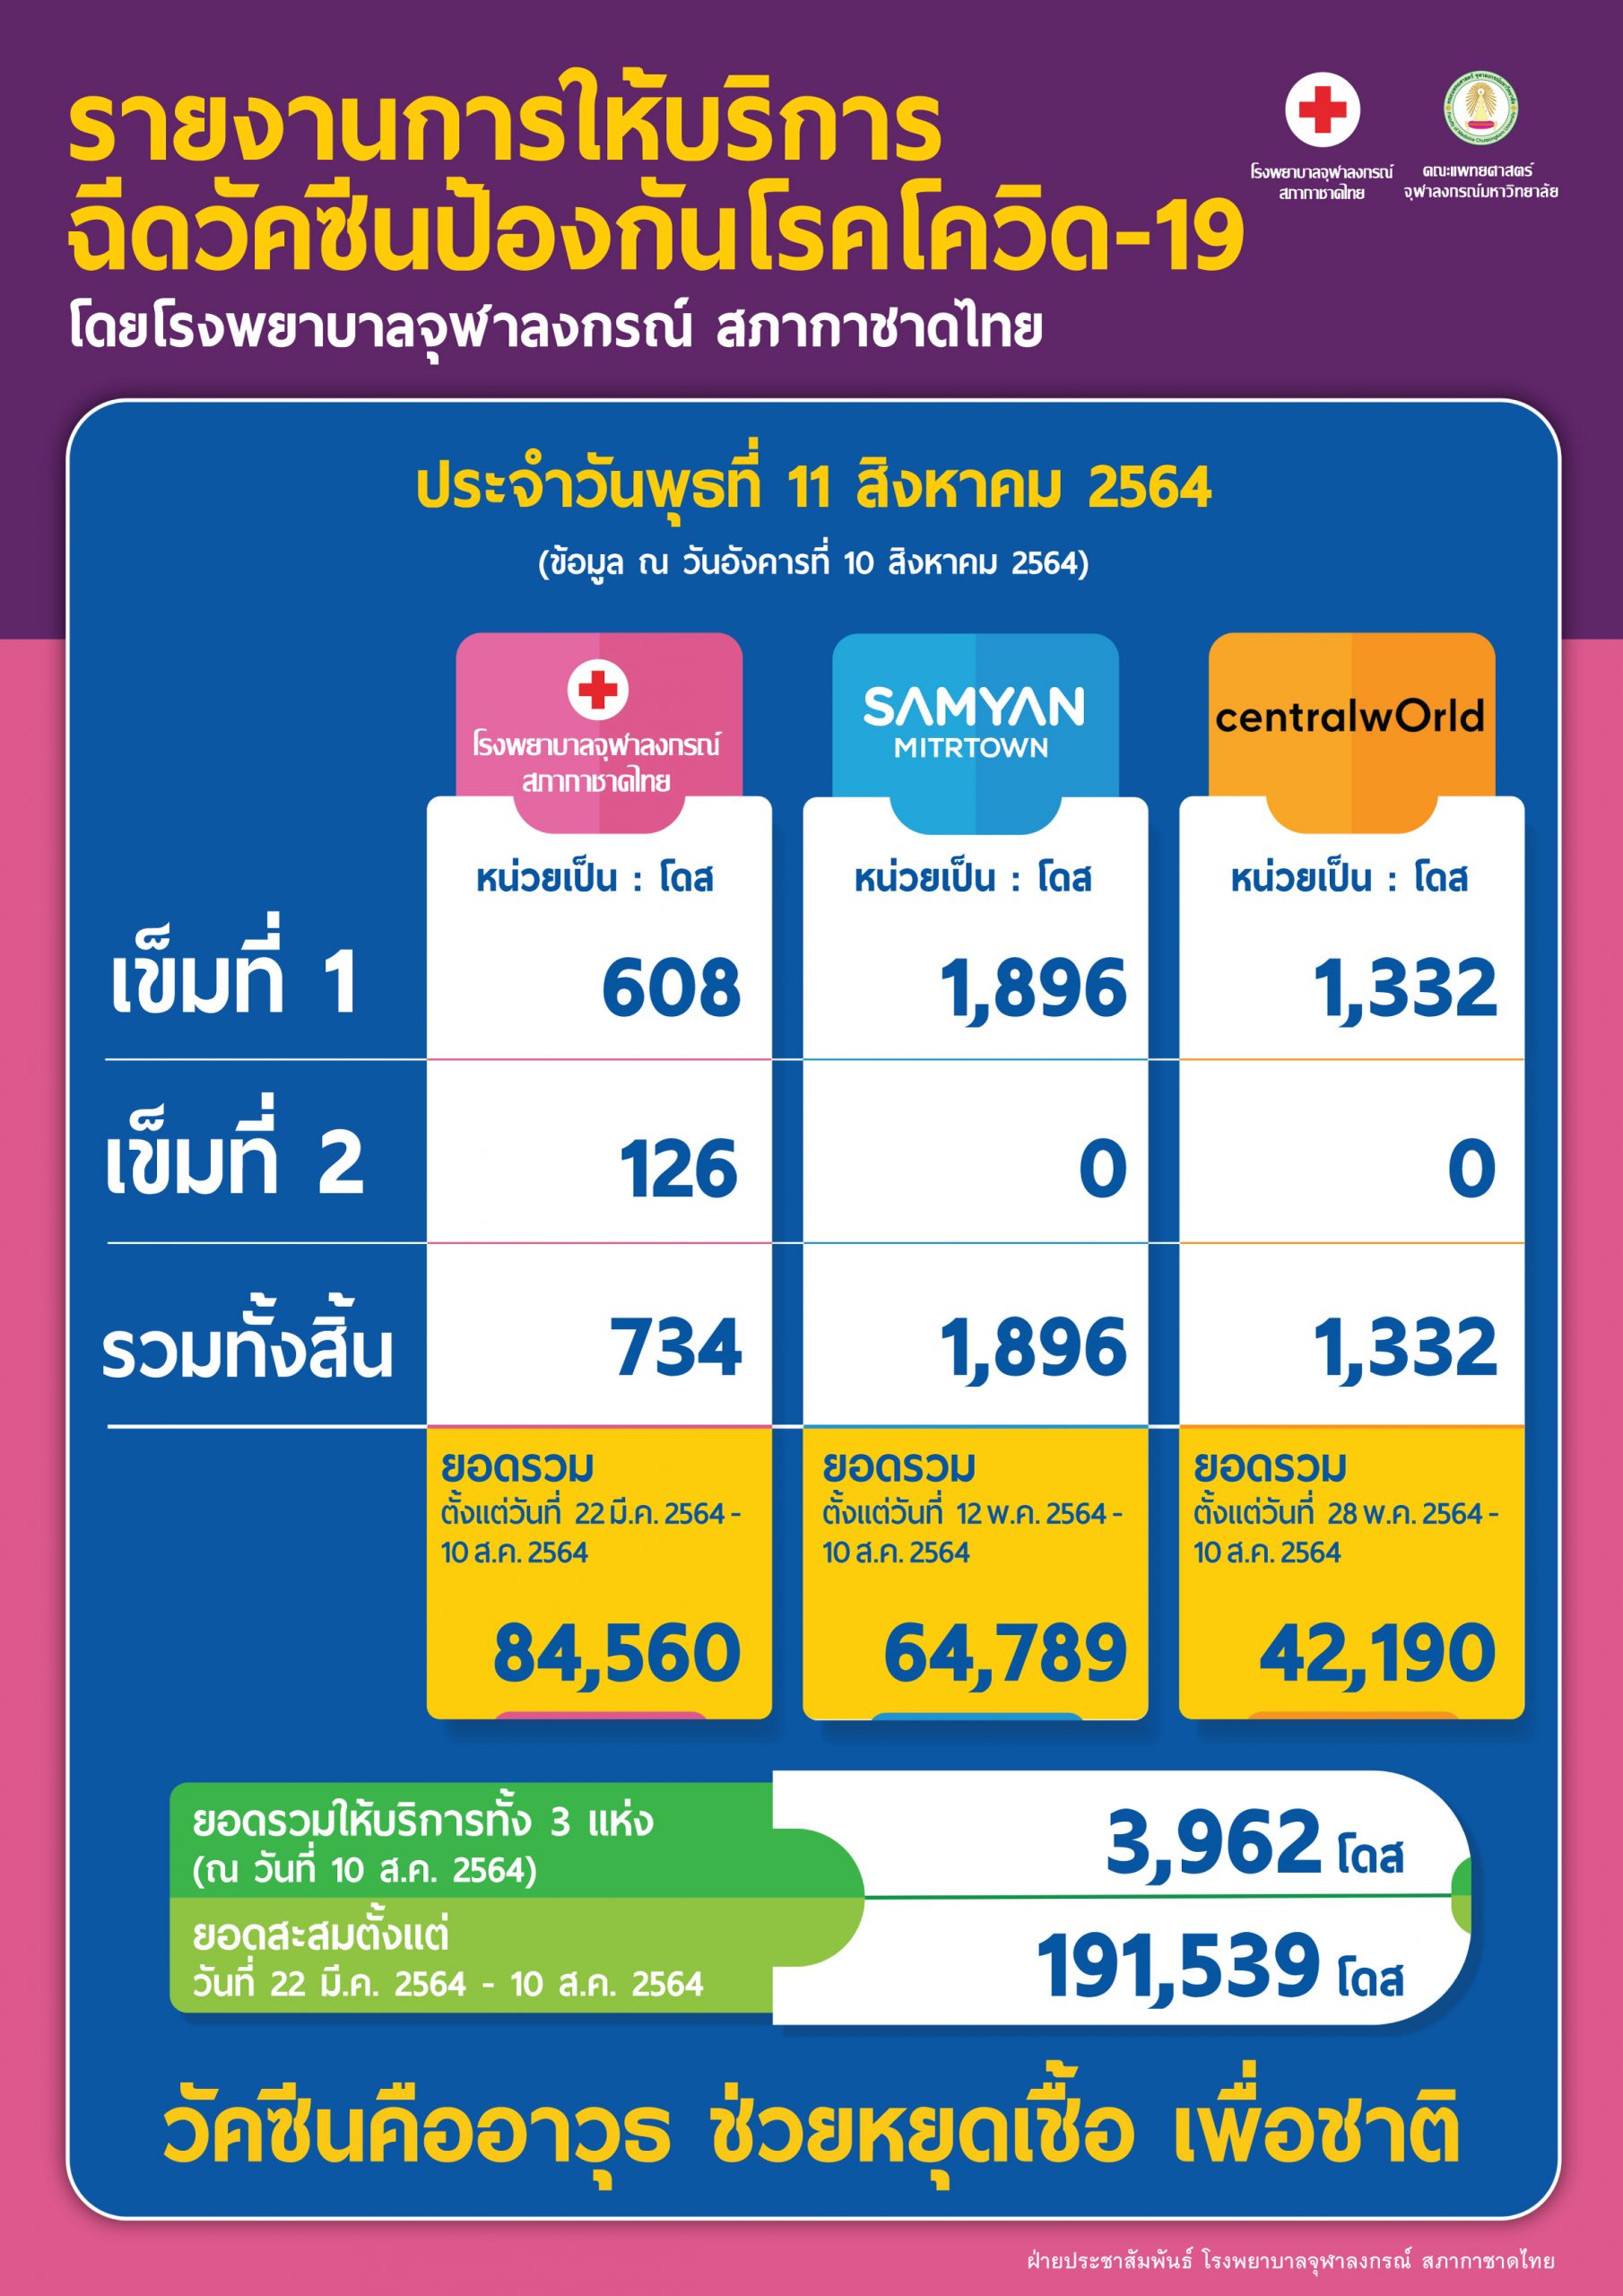 รายงานการให้บริการฉีดวัคซีนป้องกันโรคโควิด-19 โดยโรงพยาบาลจุฬาลงกรณ์ สภากาชาดไทย ประจำวันพุธที่ 11 สิงหาคม 2564